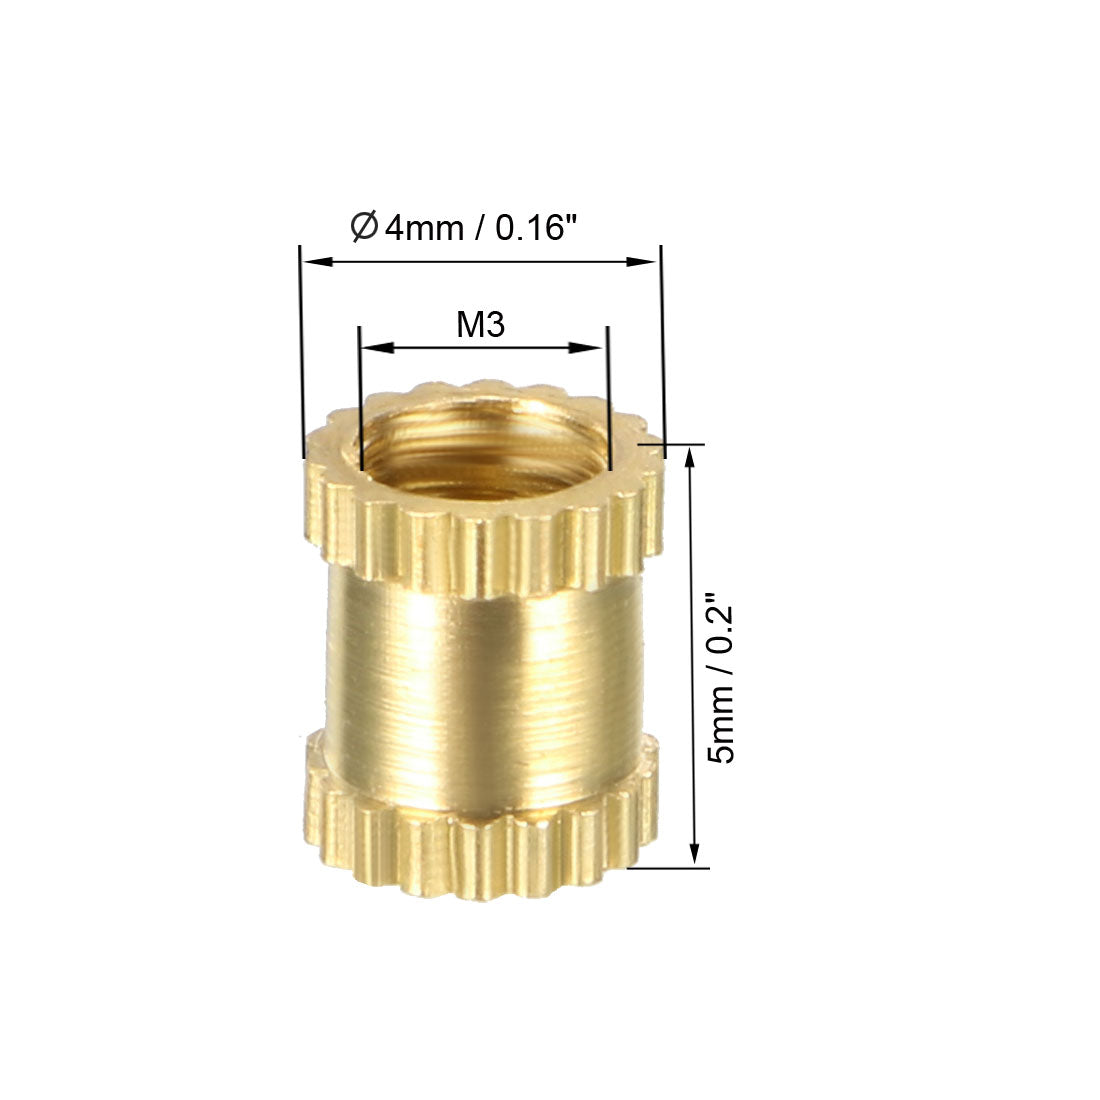 uxcell Uxcell M3 x 5mm(L) x 4mm(OD) Female Thread Brass Knurled Threaded Insert Embedment Nuts, 40 Pcs